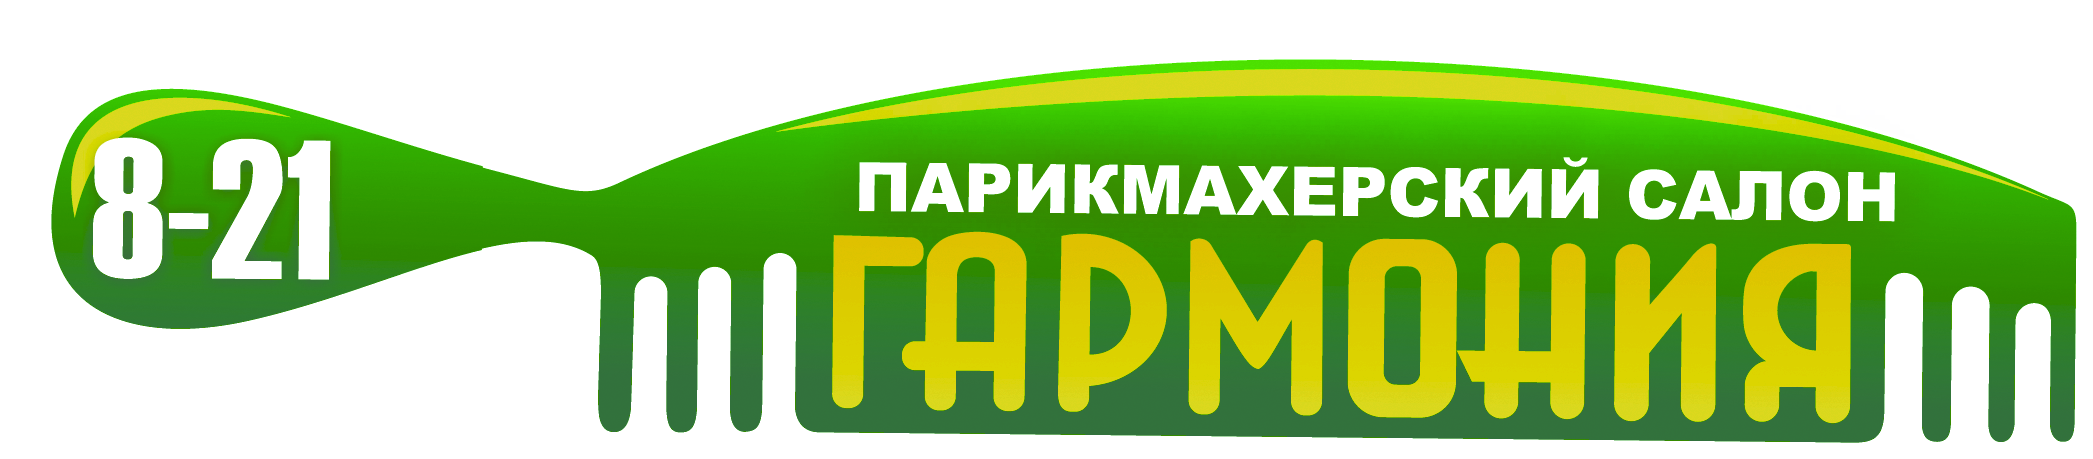 Логотип салона